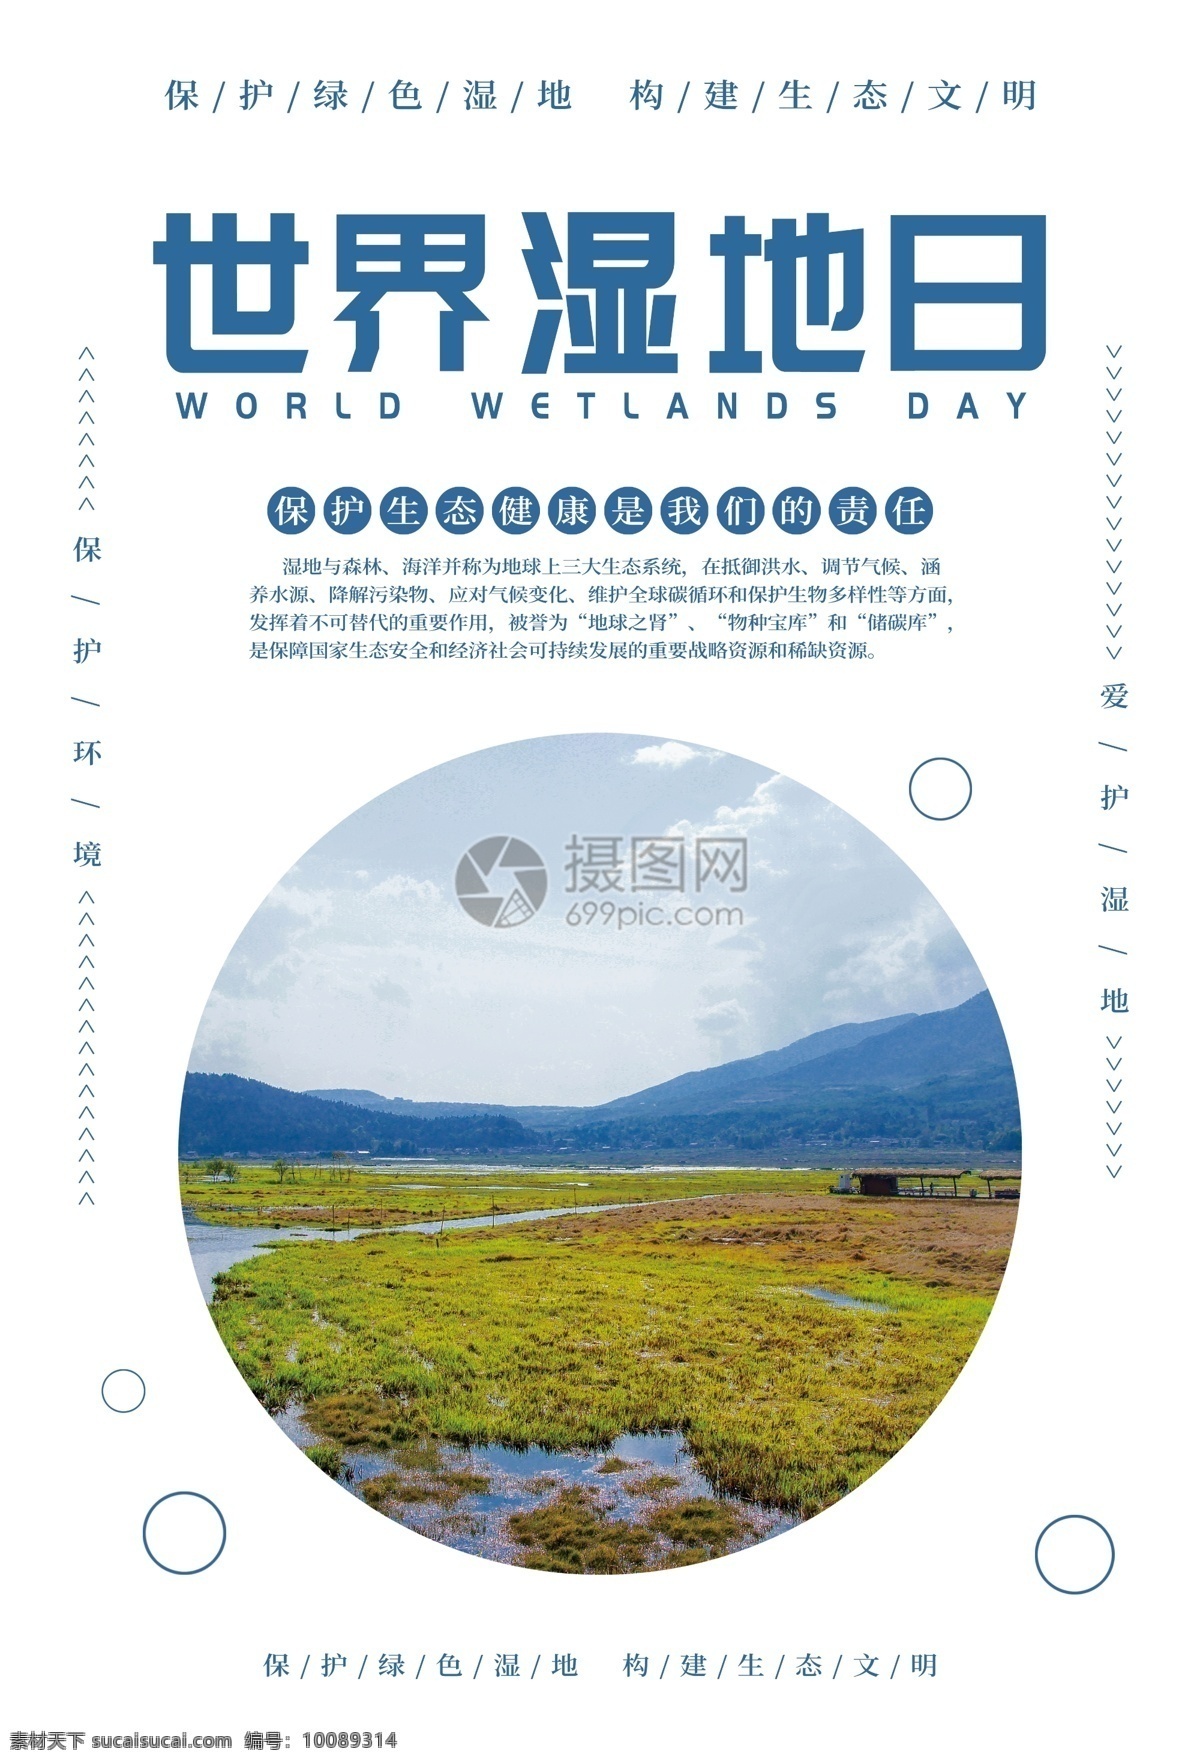 世界 湿地 日 海报 世界湿地日 环保 绿色 保护欢迎 生态 保护环境